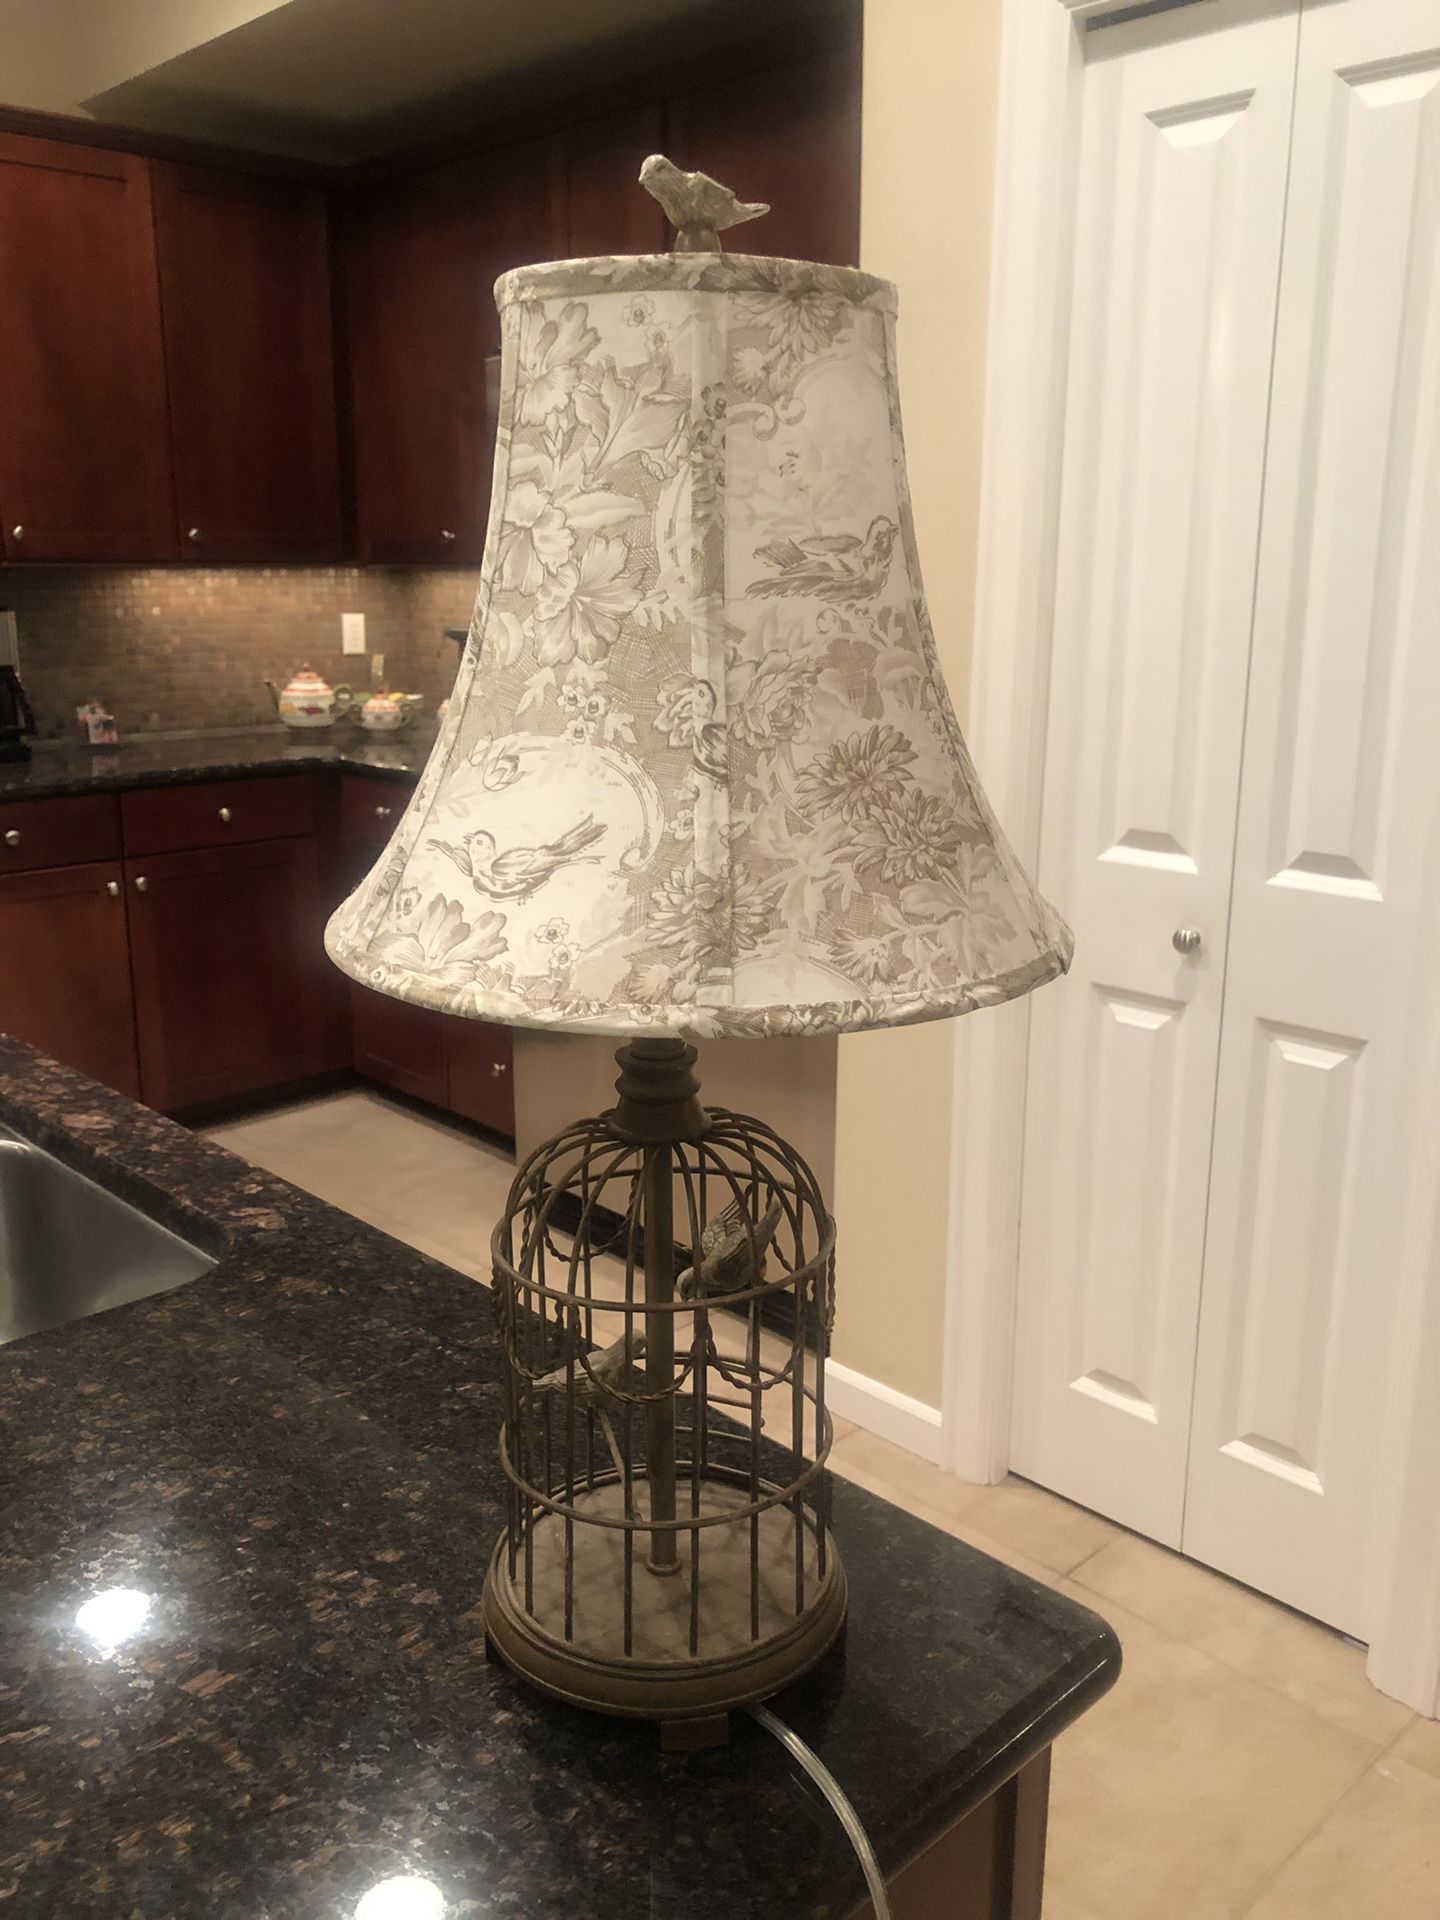 Cute bird lamp!